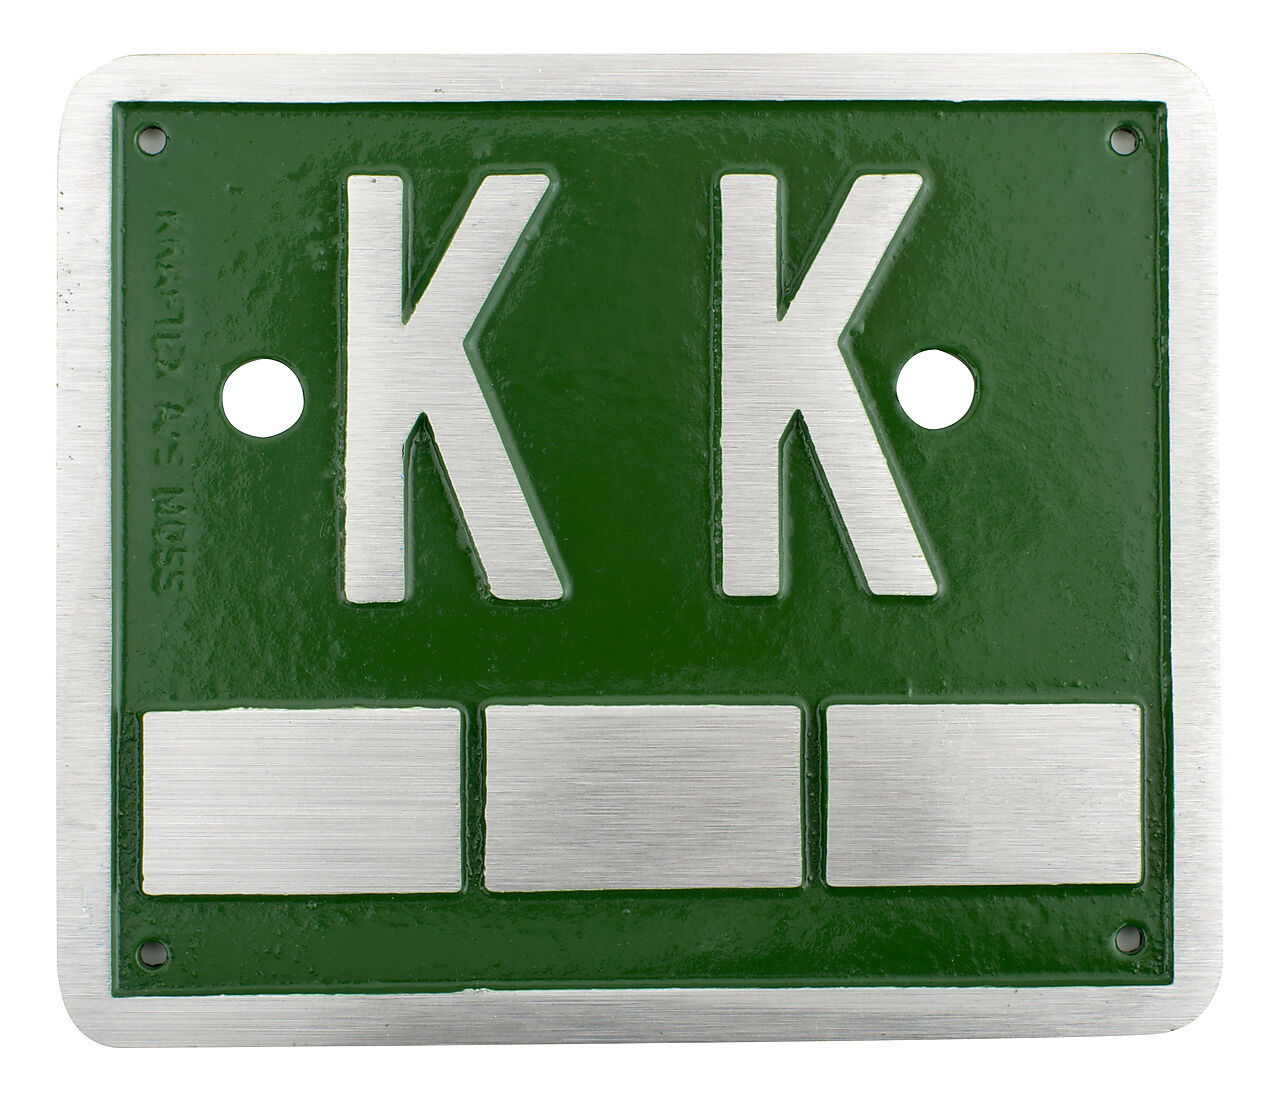 Kloakkumskilt K-12 "KK" grønn 1